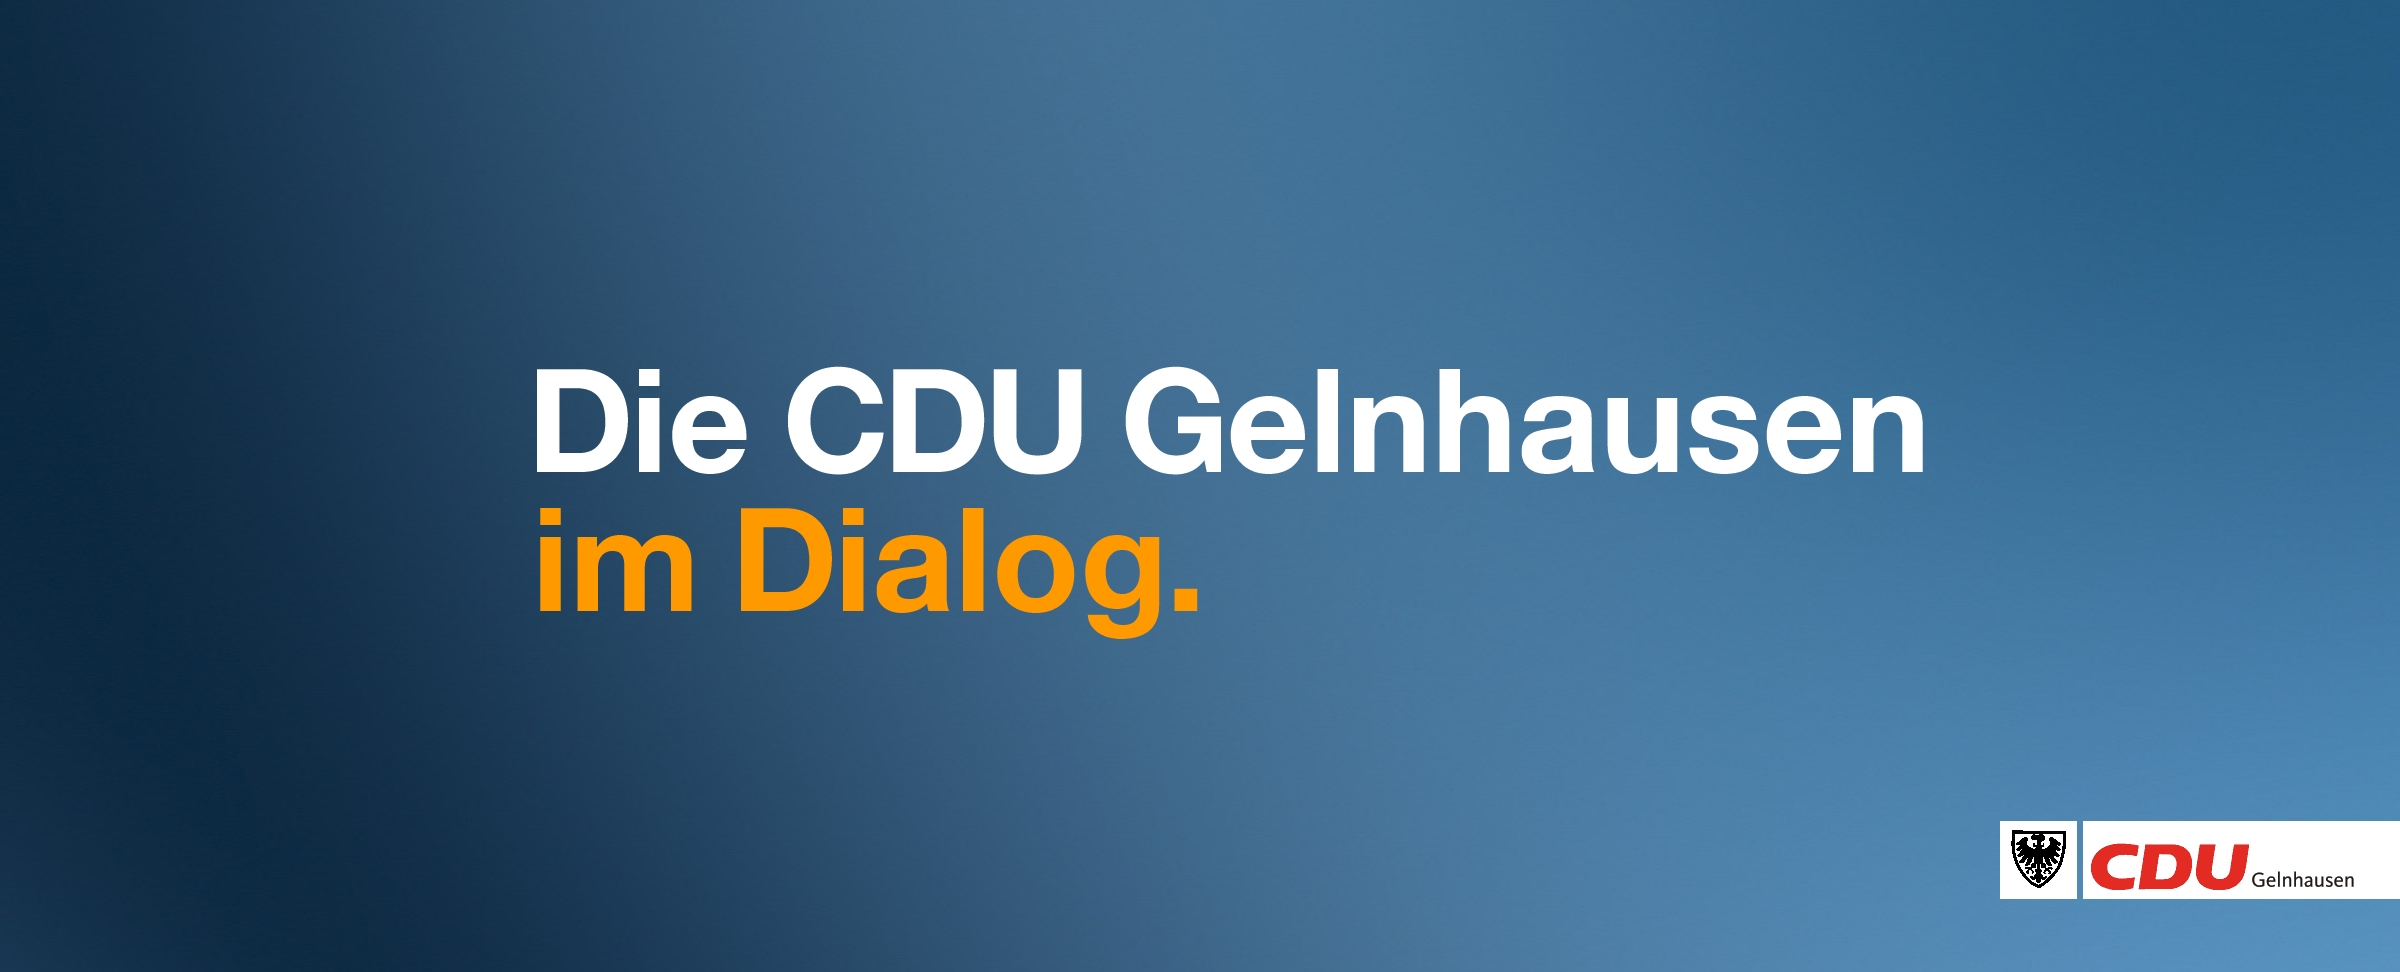 CDU Gelnhausen kritisiert Koalition.